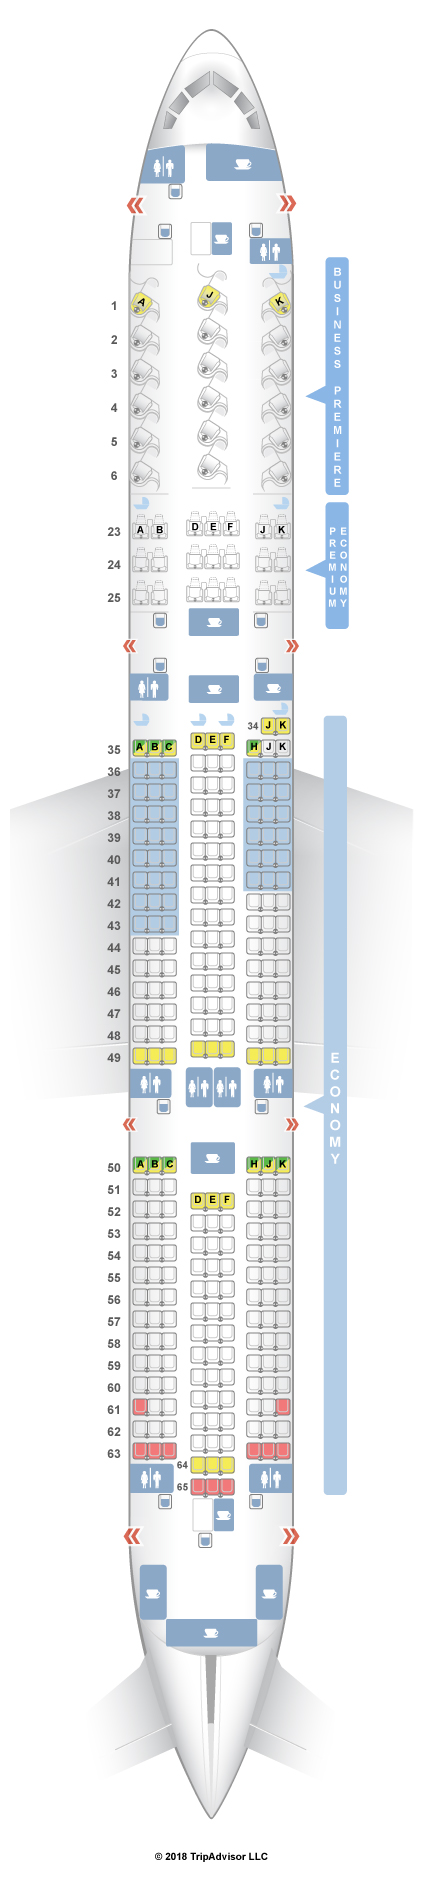 Boeing Seat Map Afp Cv